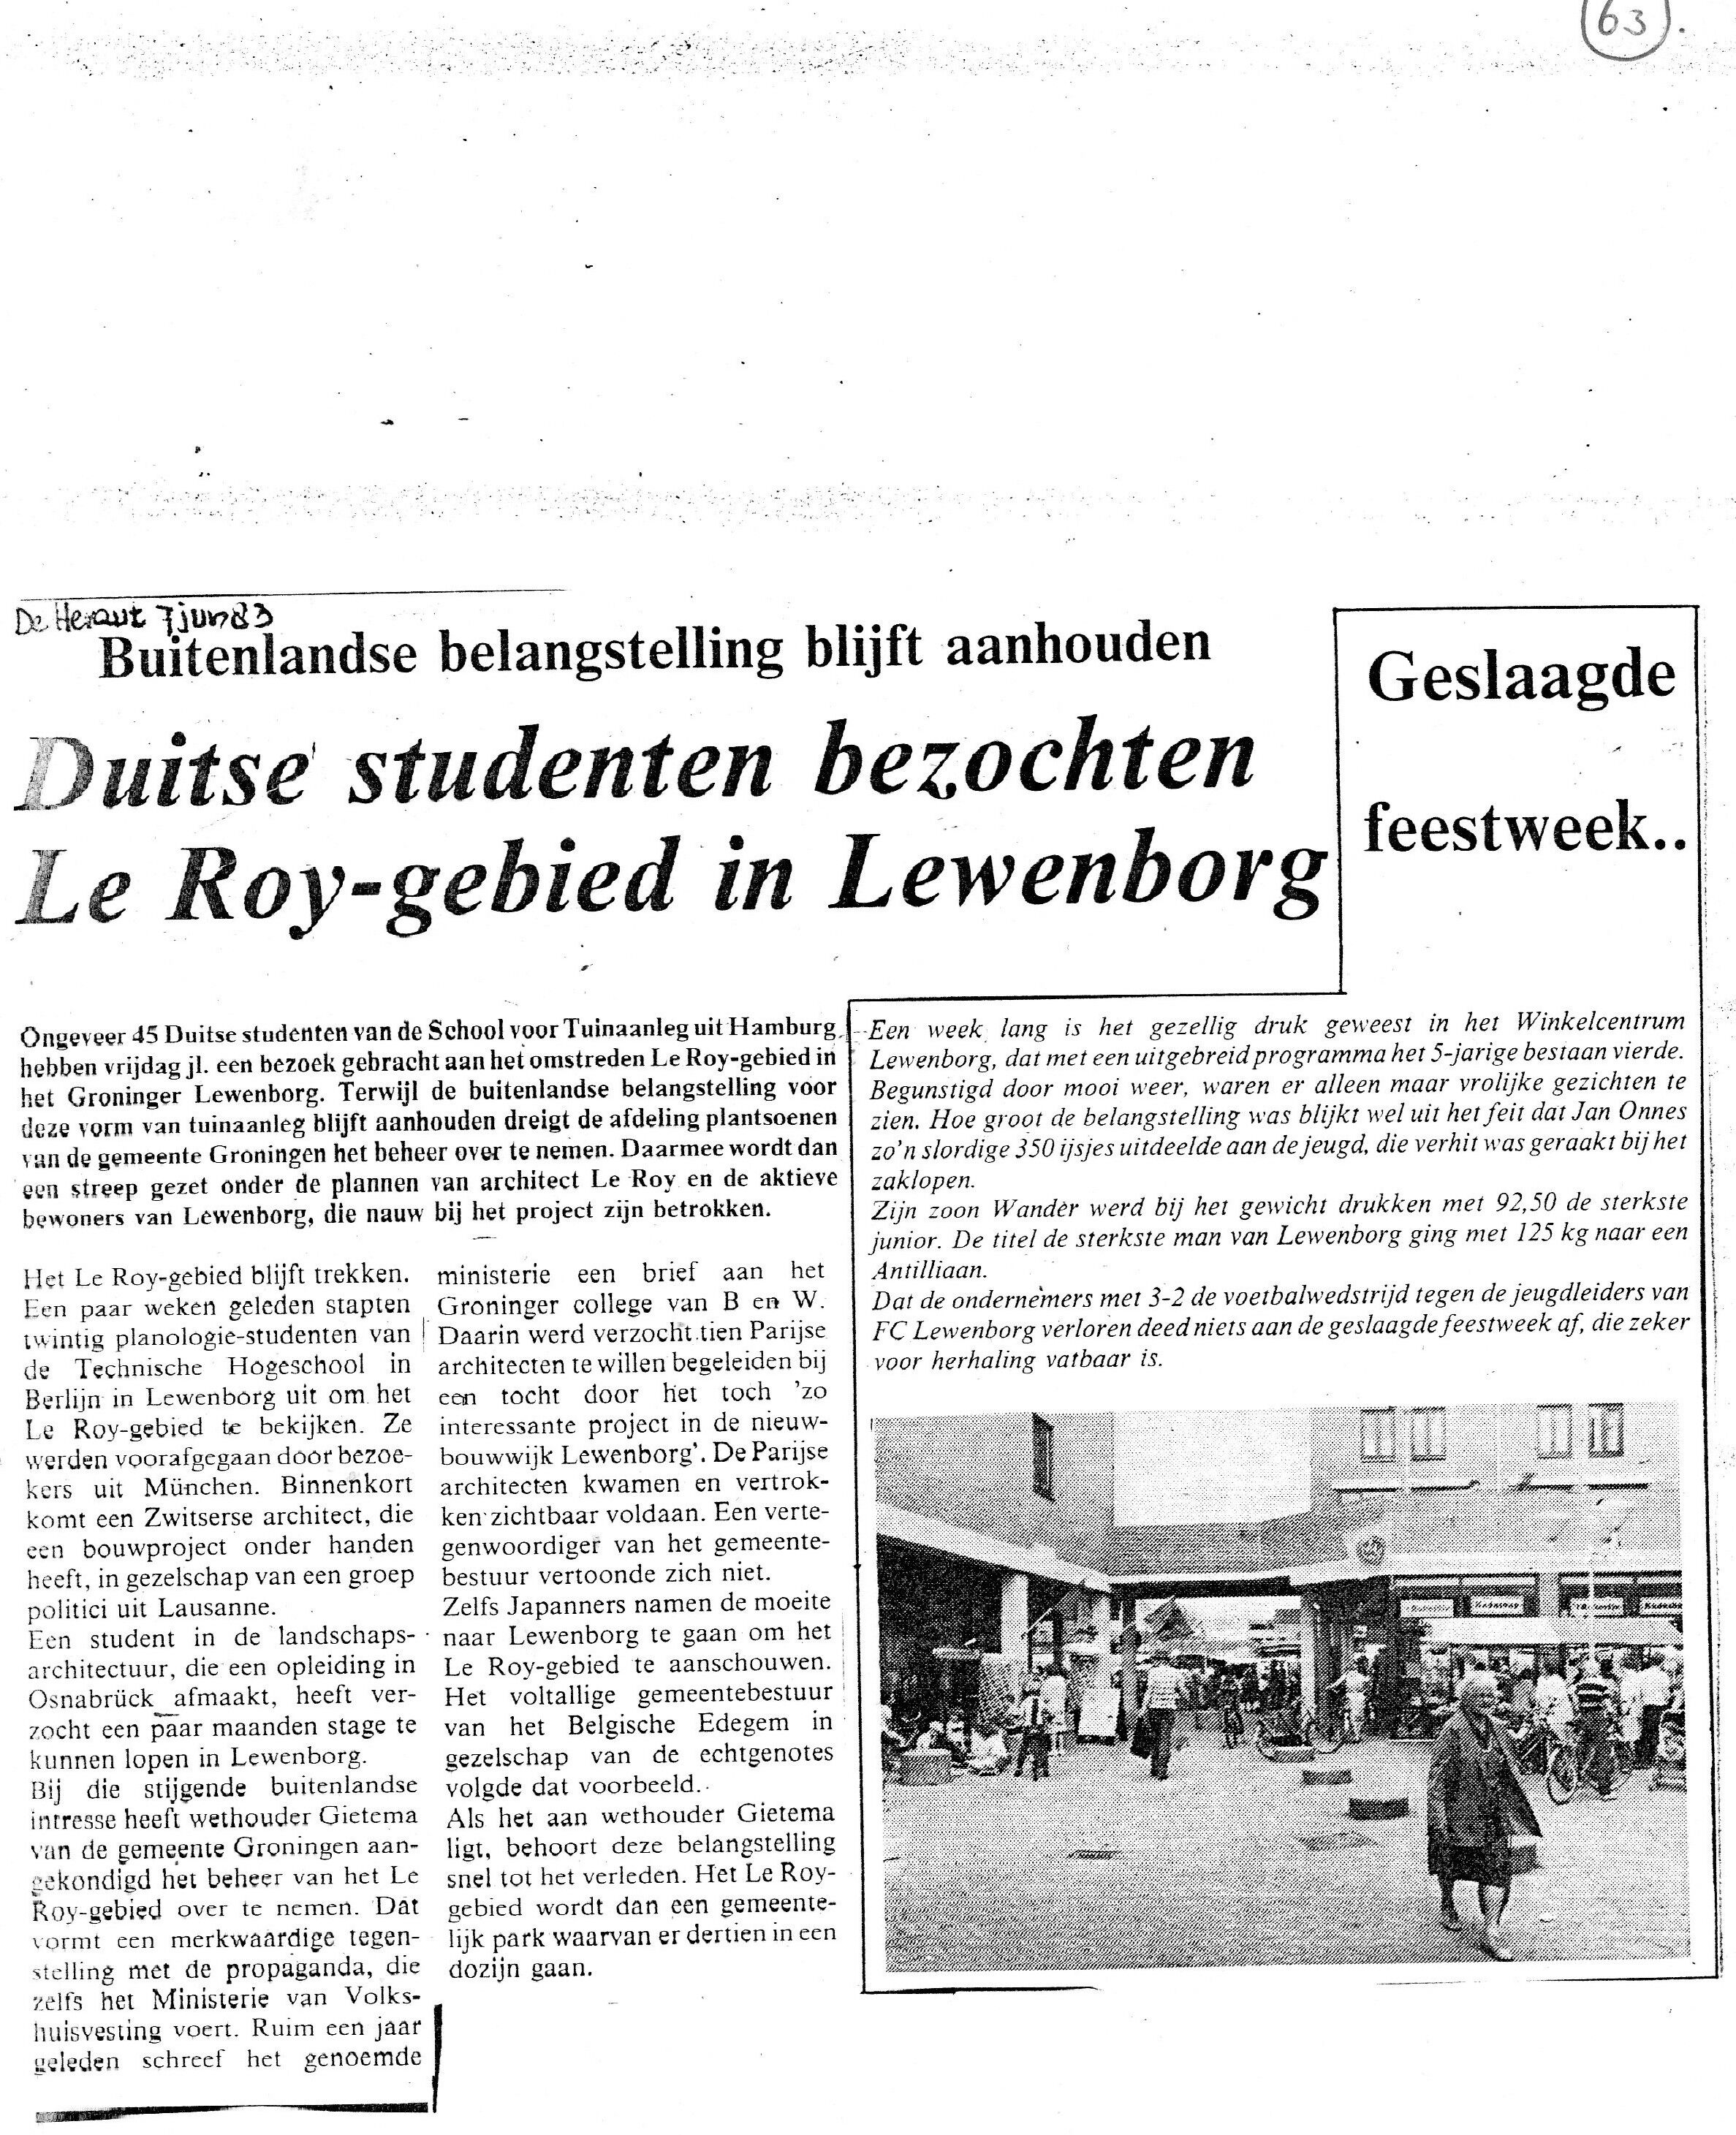 19830607_Duitse_studenten_bezochten_Le_Roy-gebied_in_Lewenborg.jpg